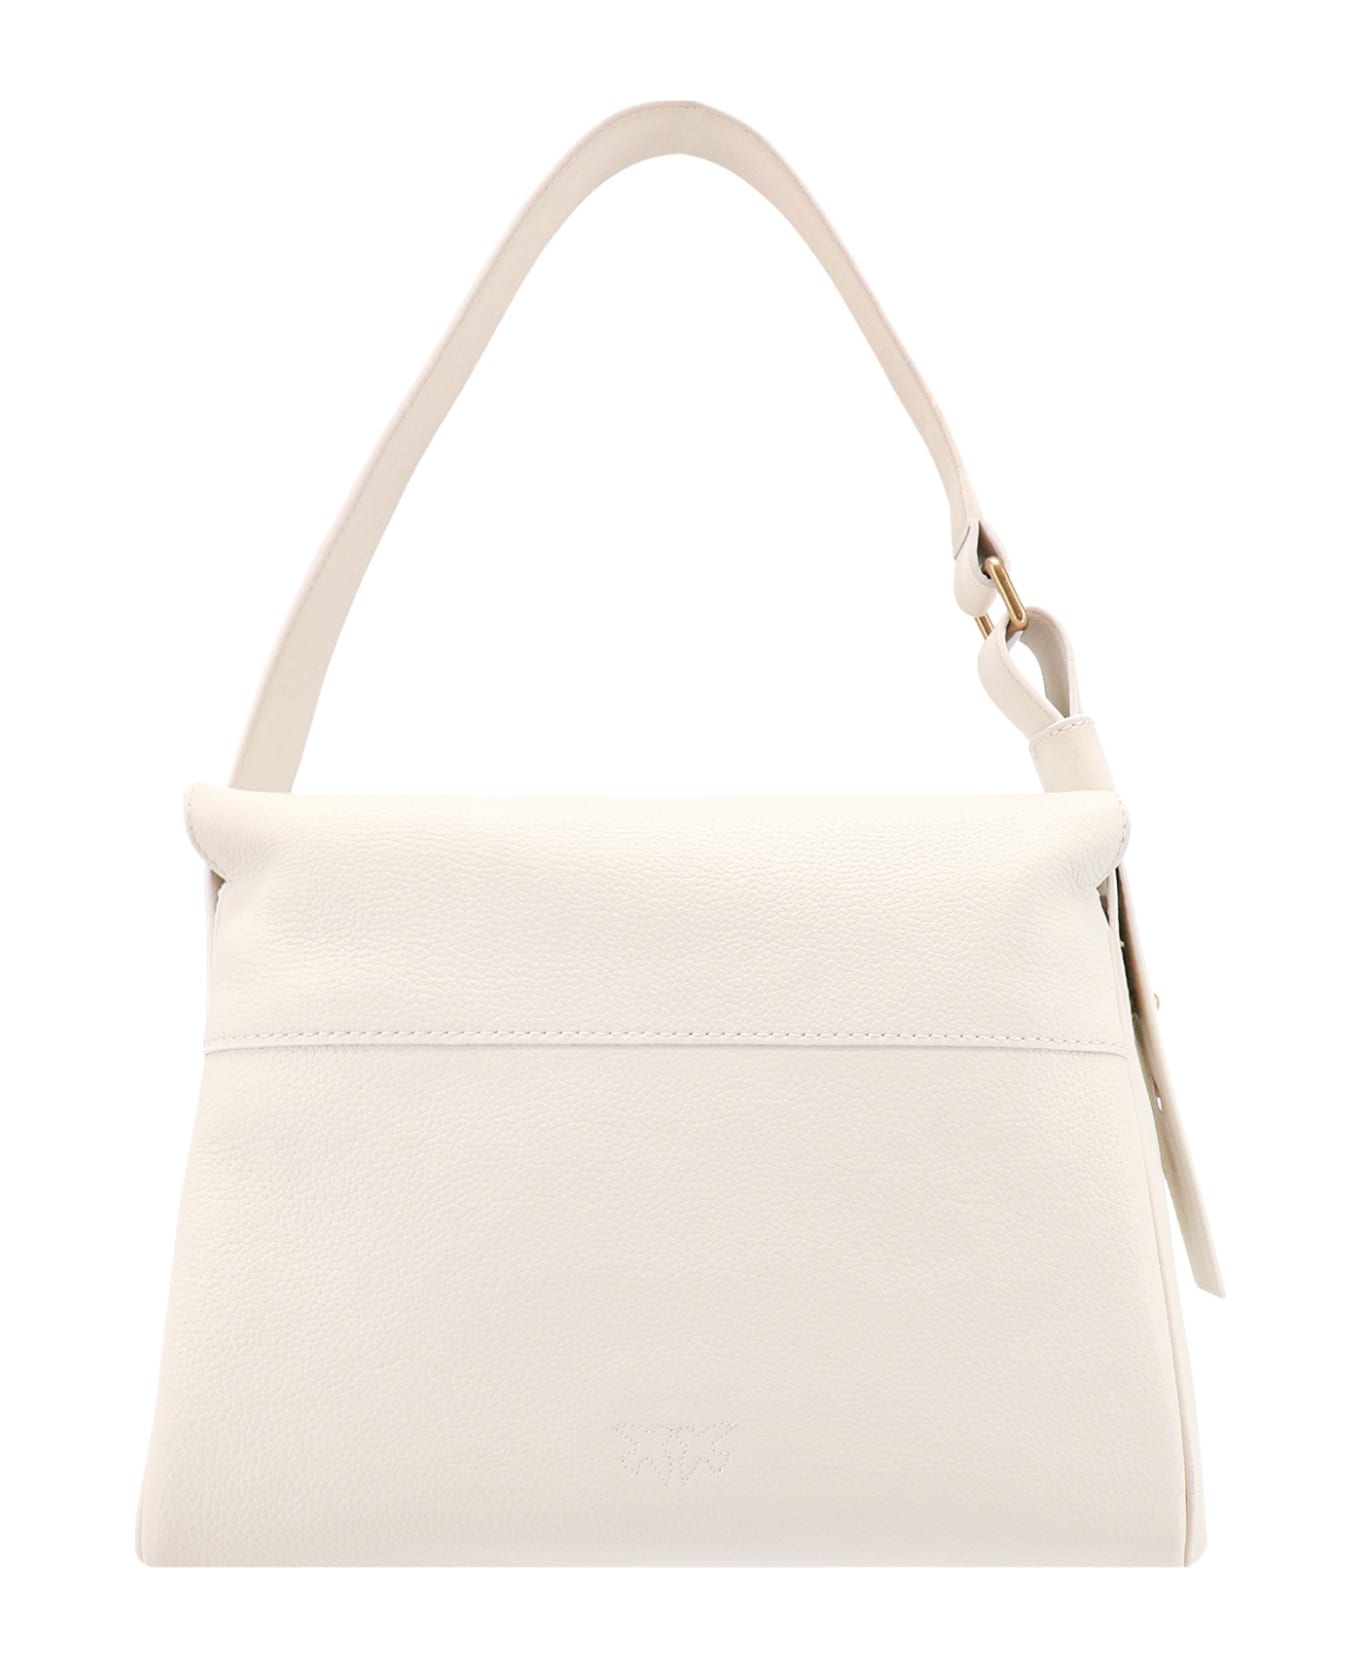 Pinko Handbag - White